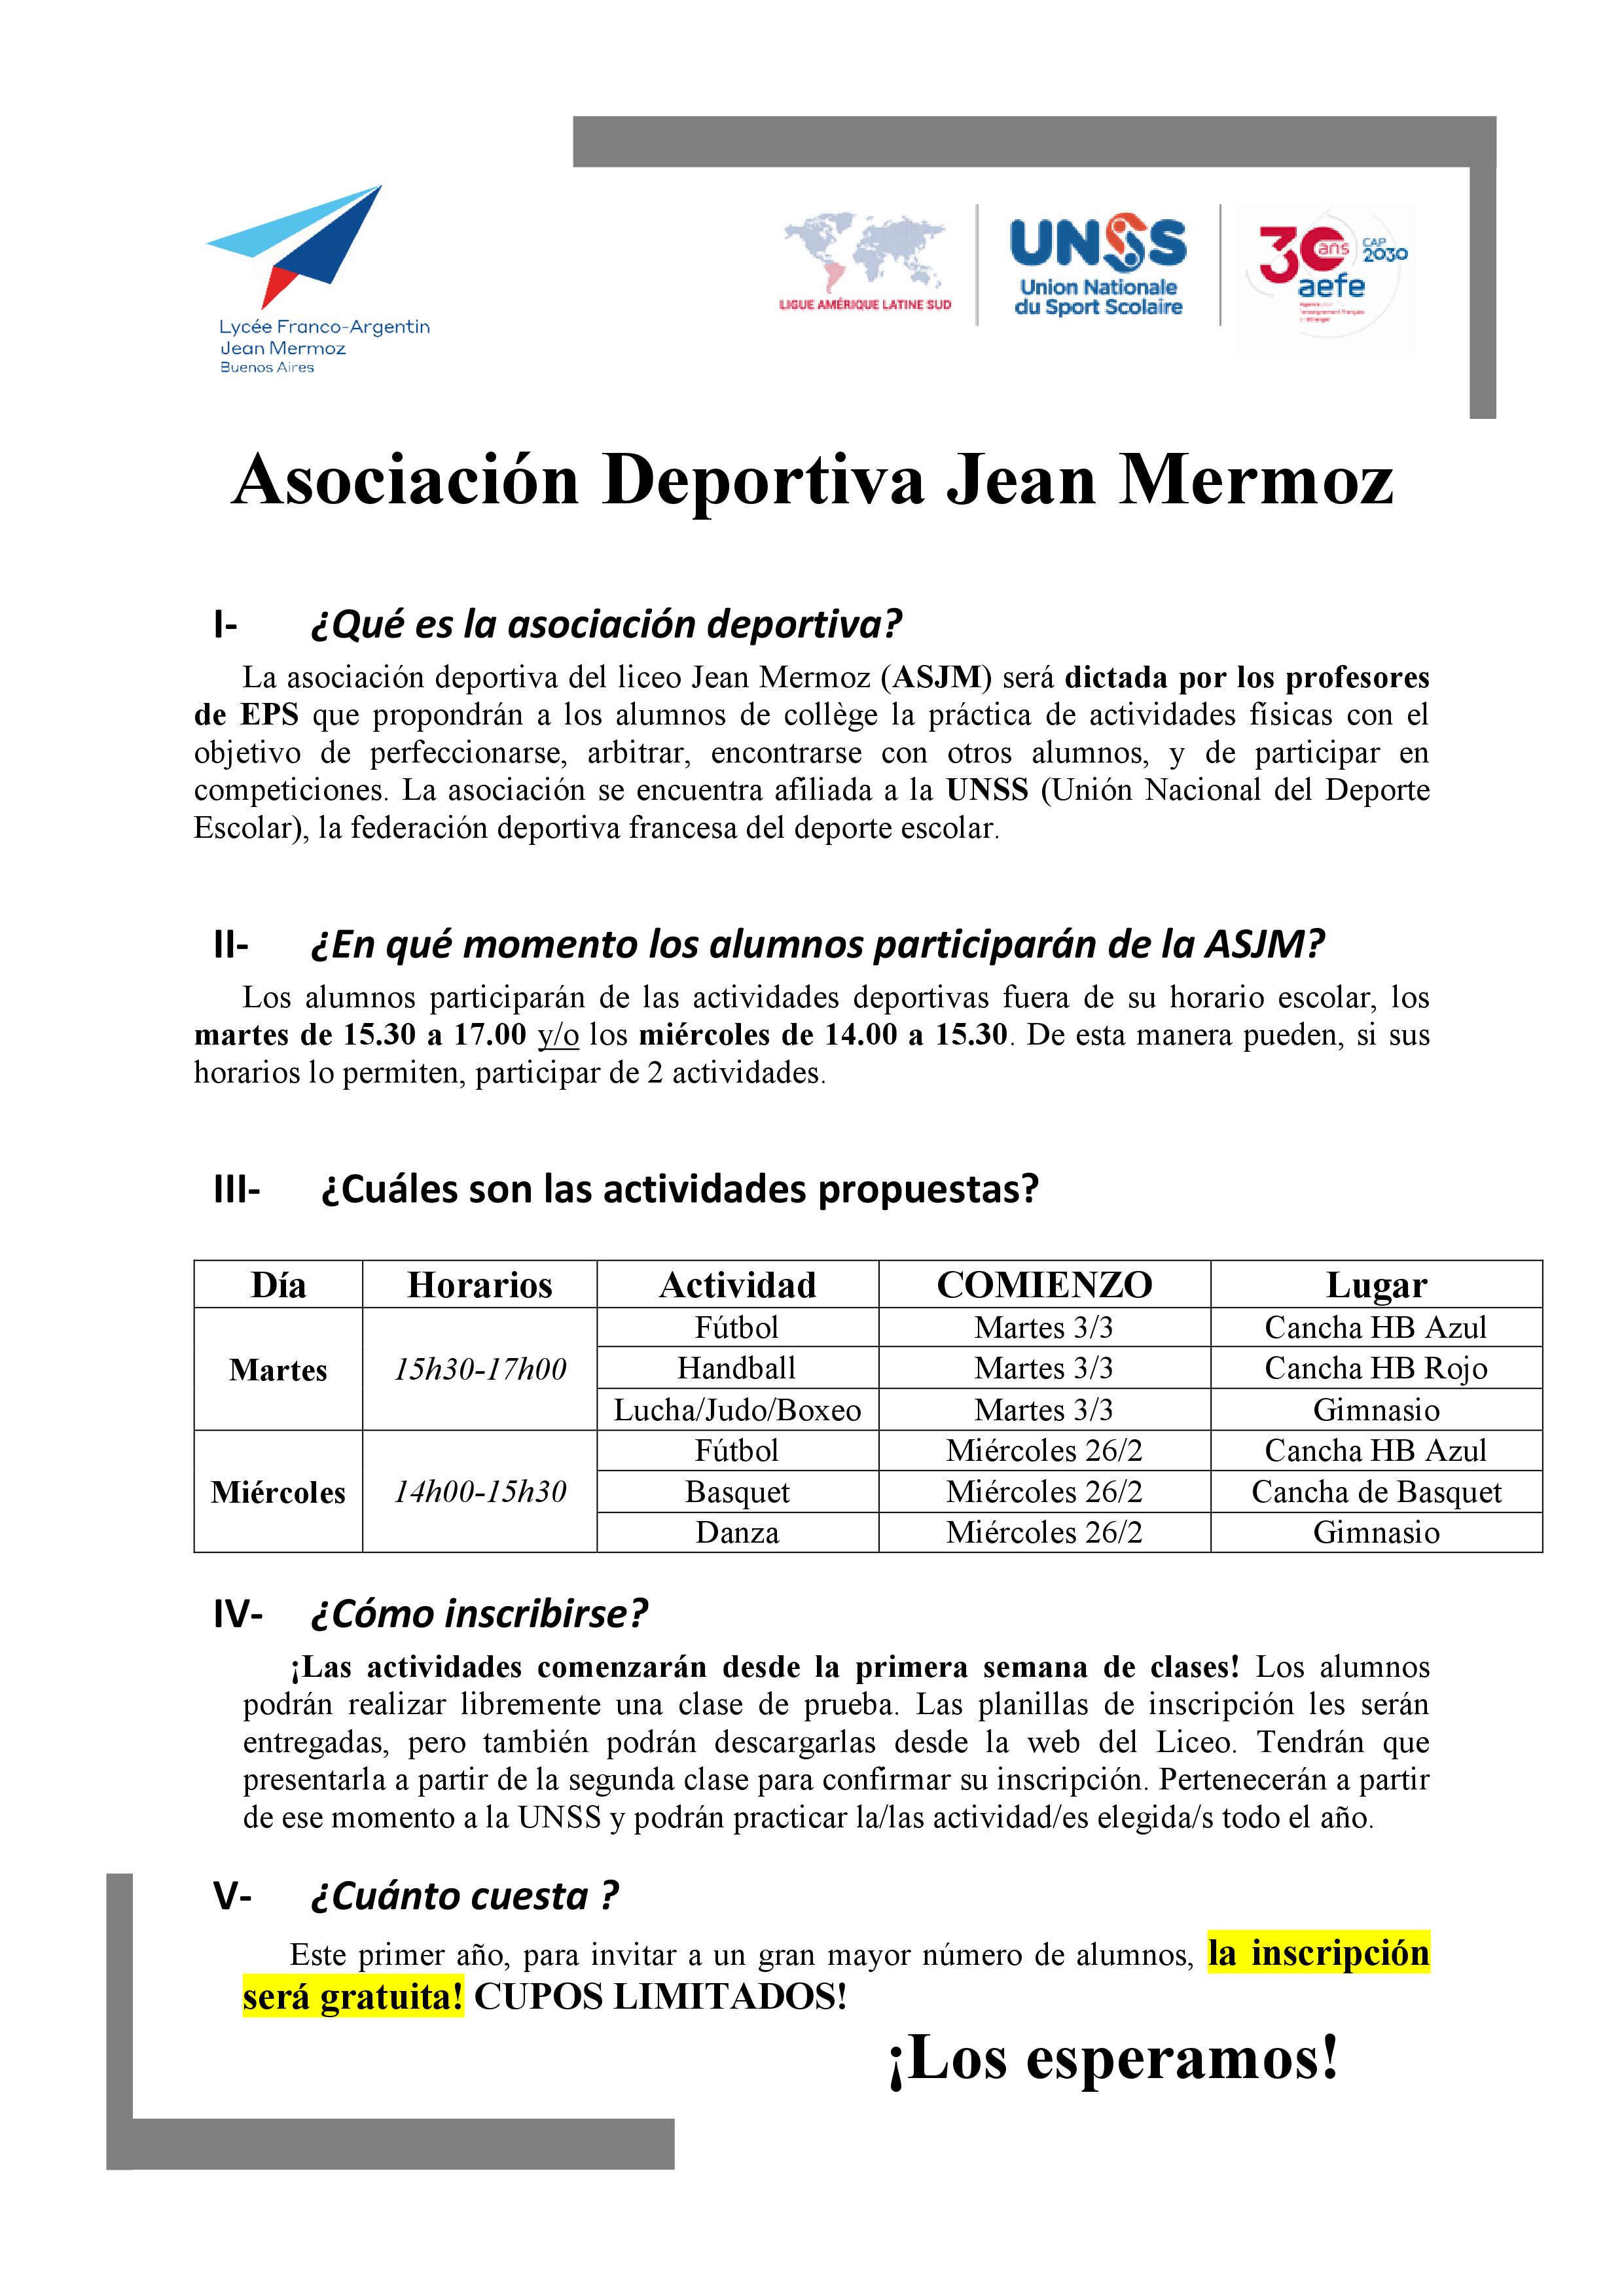 Presentación Asociación Deportiva Jean Mermoz 2020